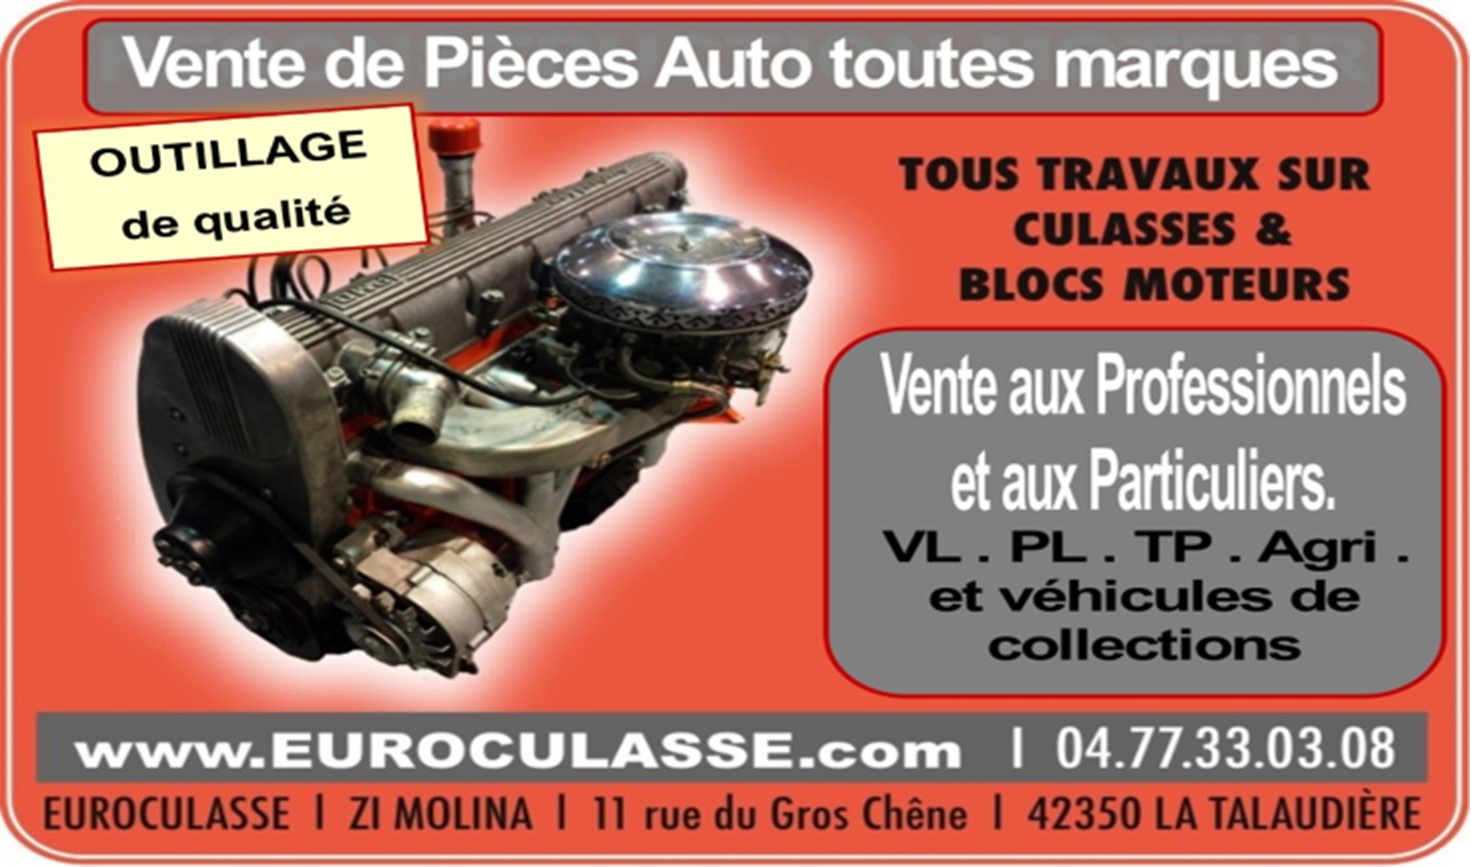 Sarl BOUVIER Euroculasse rectification/reconstruction moteur & culasse